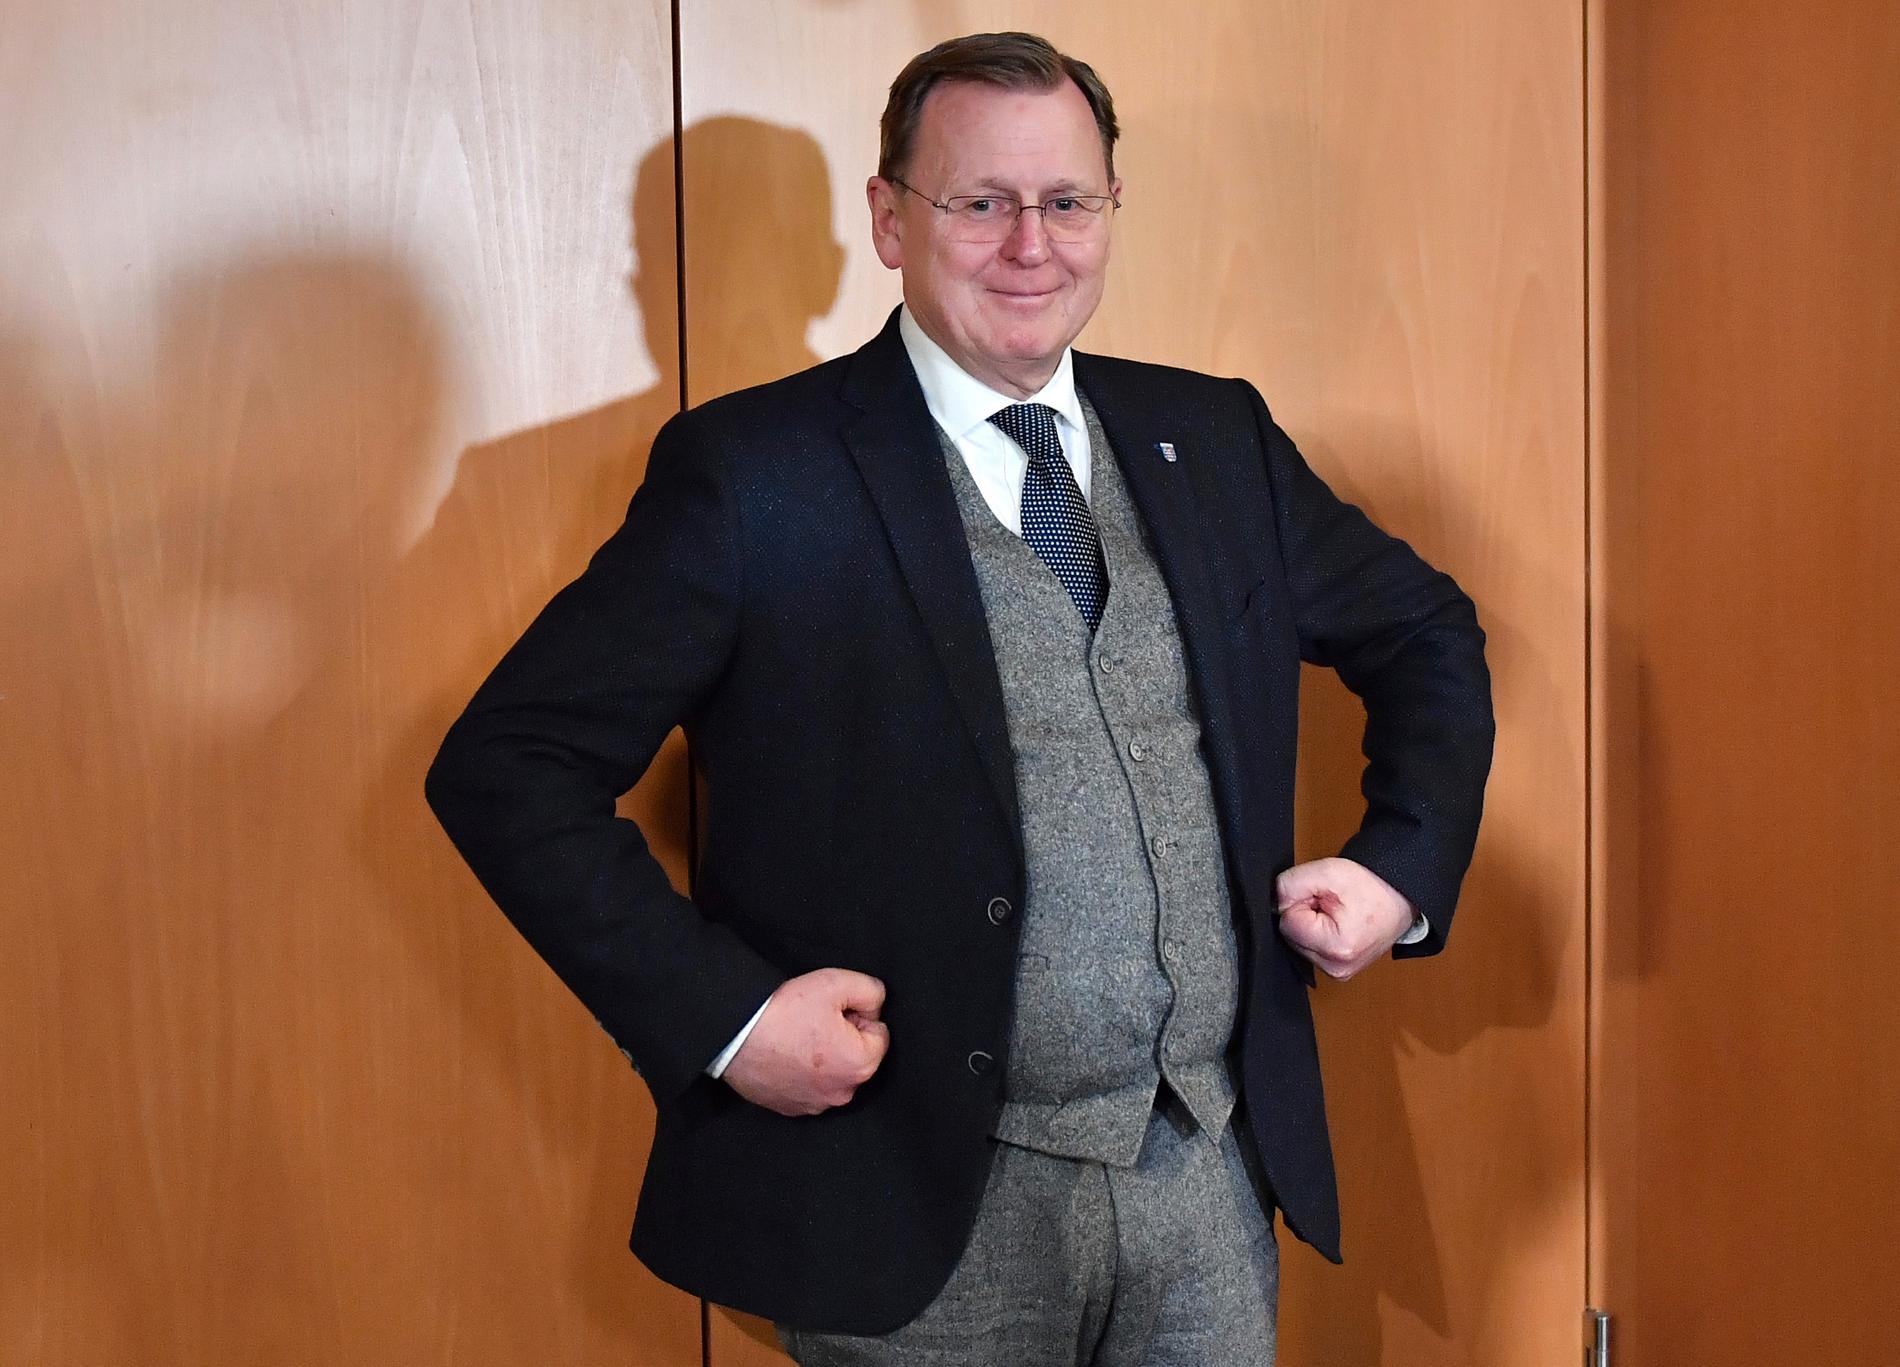 Vänstermannen Bodo Ramelow ser ut att få nytt förtroende som regeringschef i Thüringen, när CDU väljer ny väg. Här ler han, en stund före tillkännagivandet av en bred kompromiss mellan flera partier.